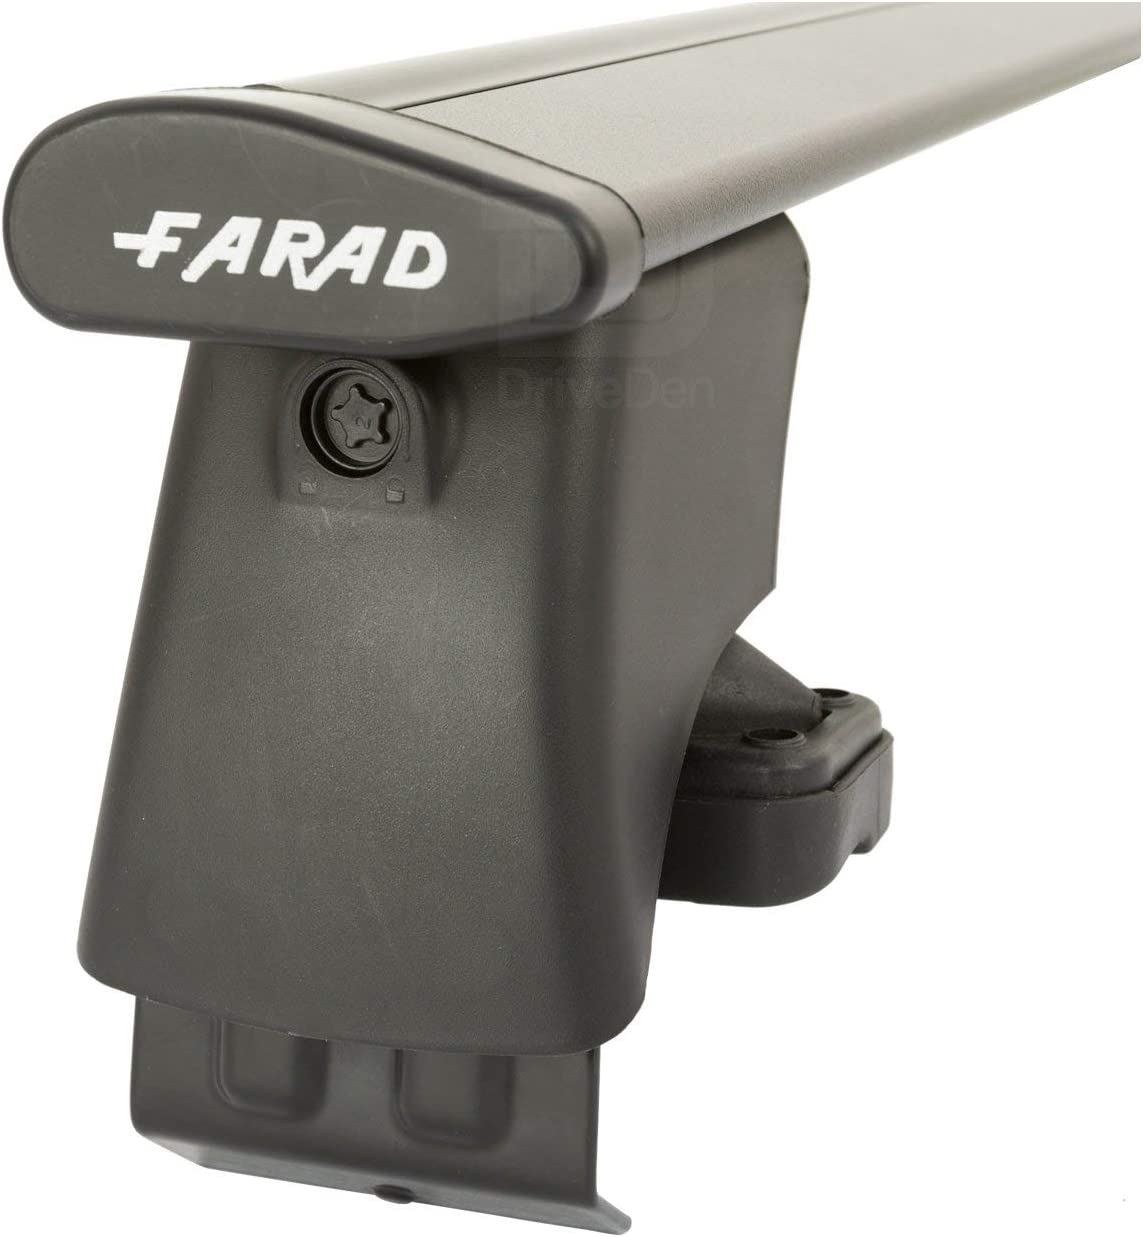 FARAD-Kit H2 per barre portatutto - Mazda 3 2014-2018 (senza corrimano)